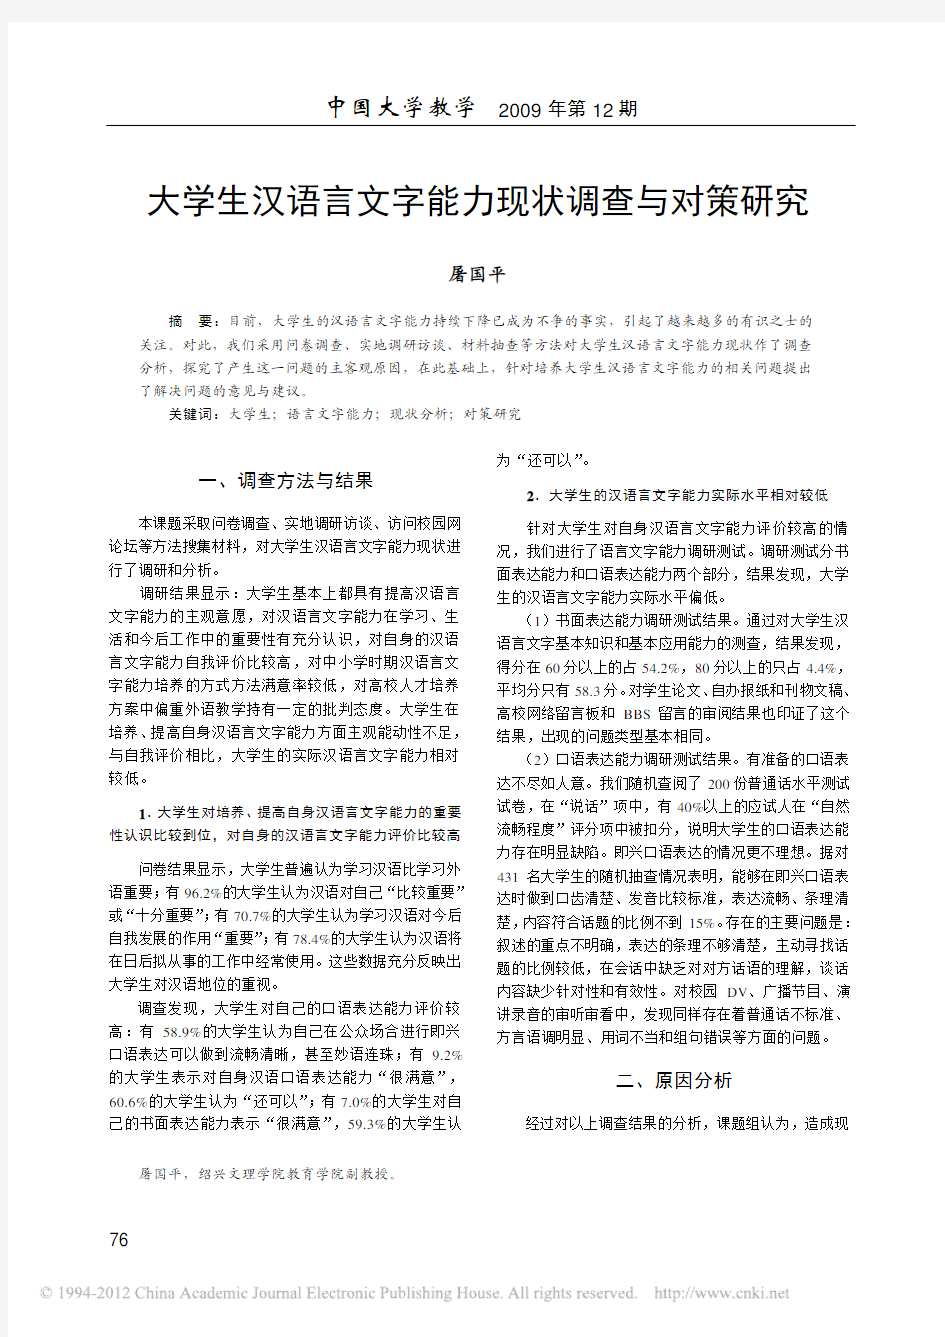 大学生汉语言文字能力现状调查与对策研究_屠国平